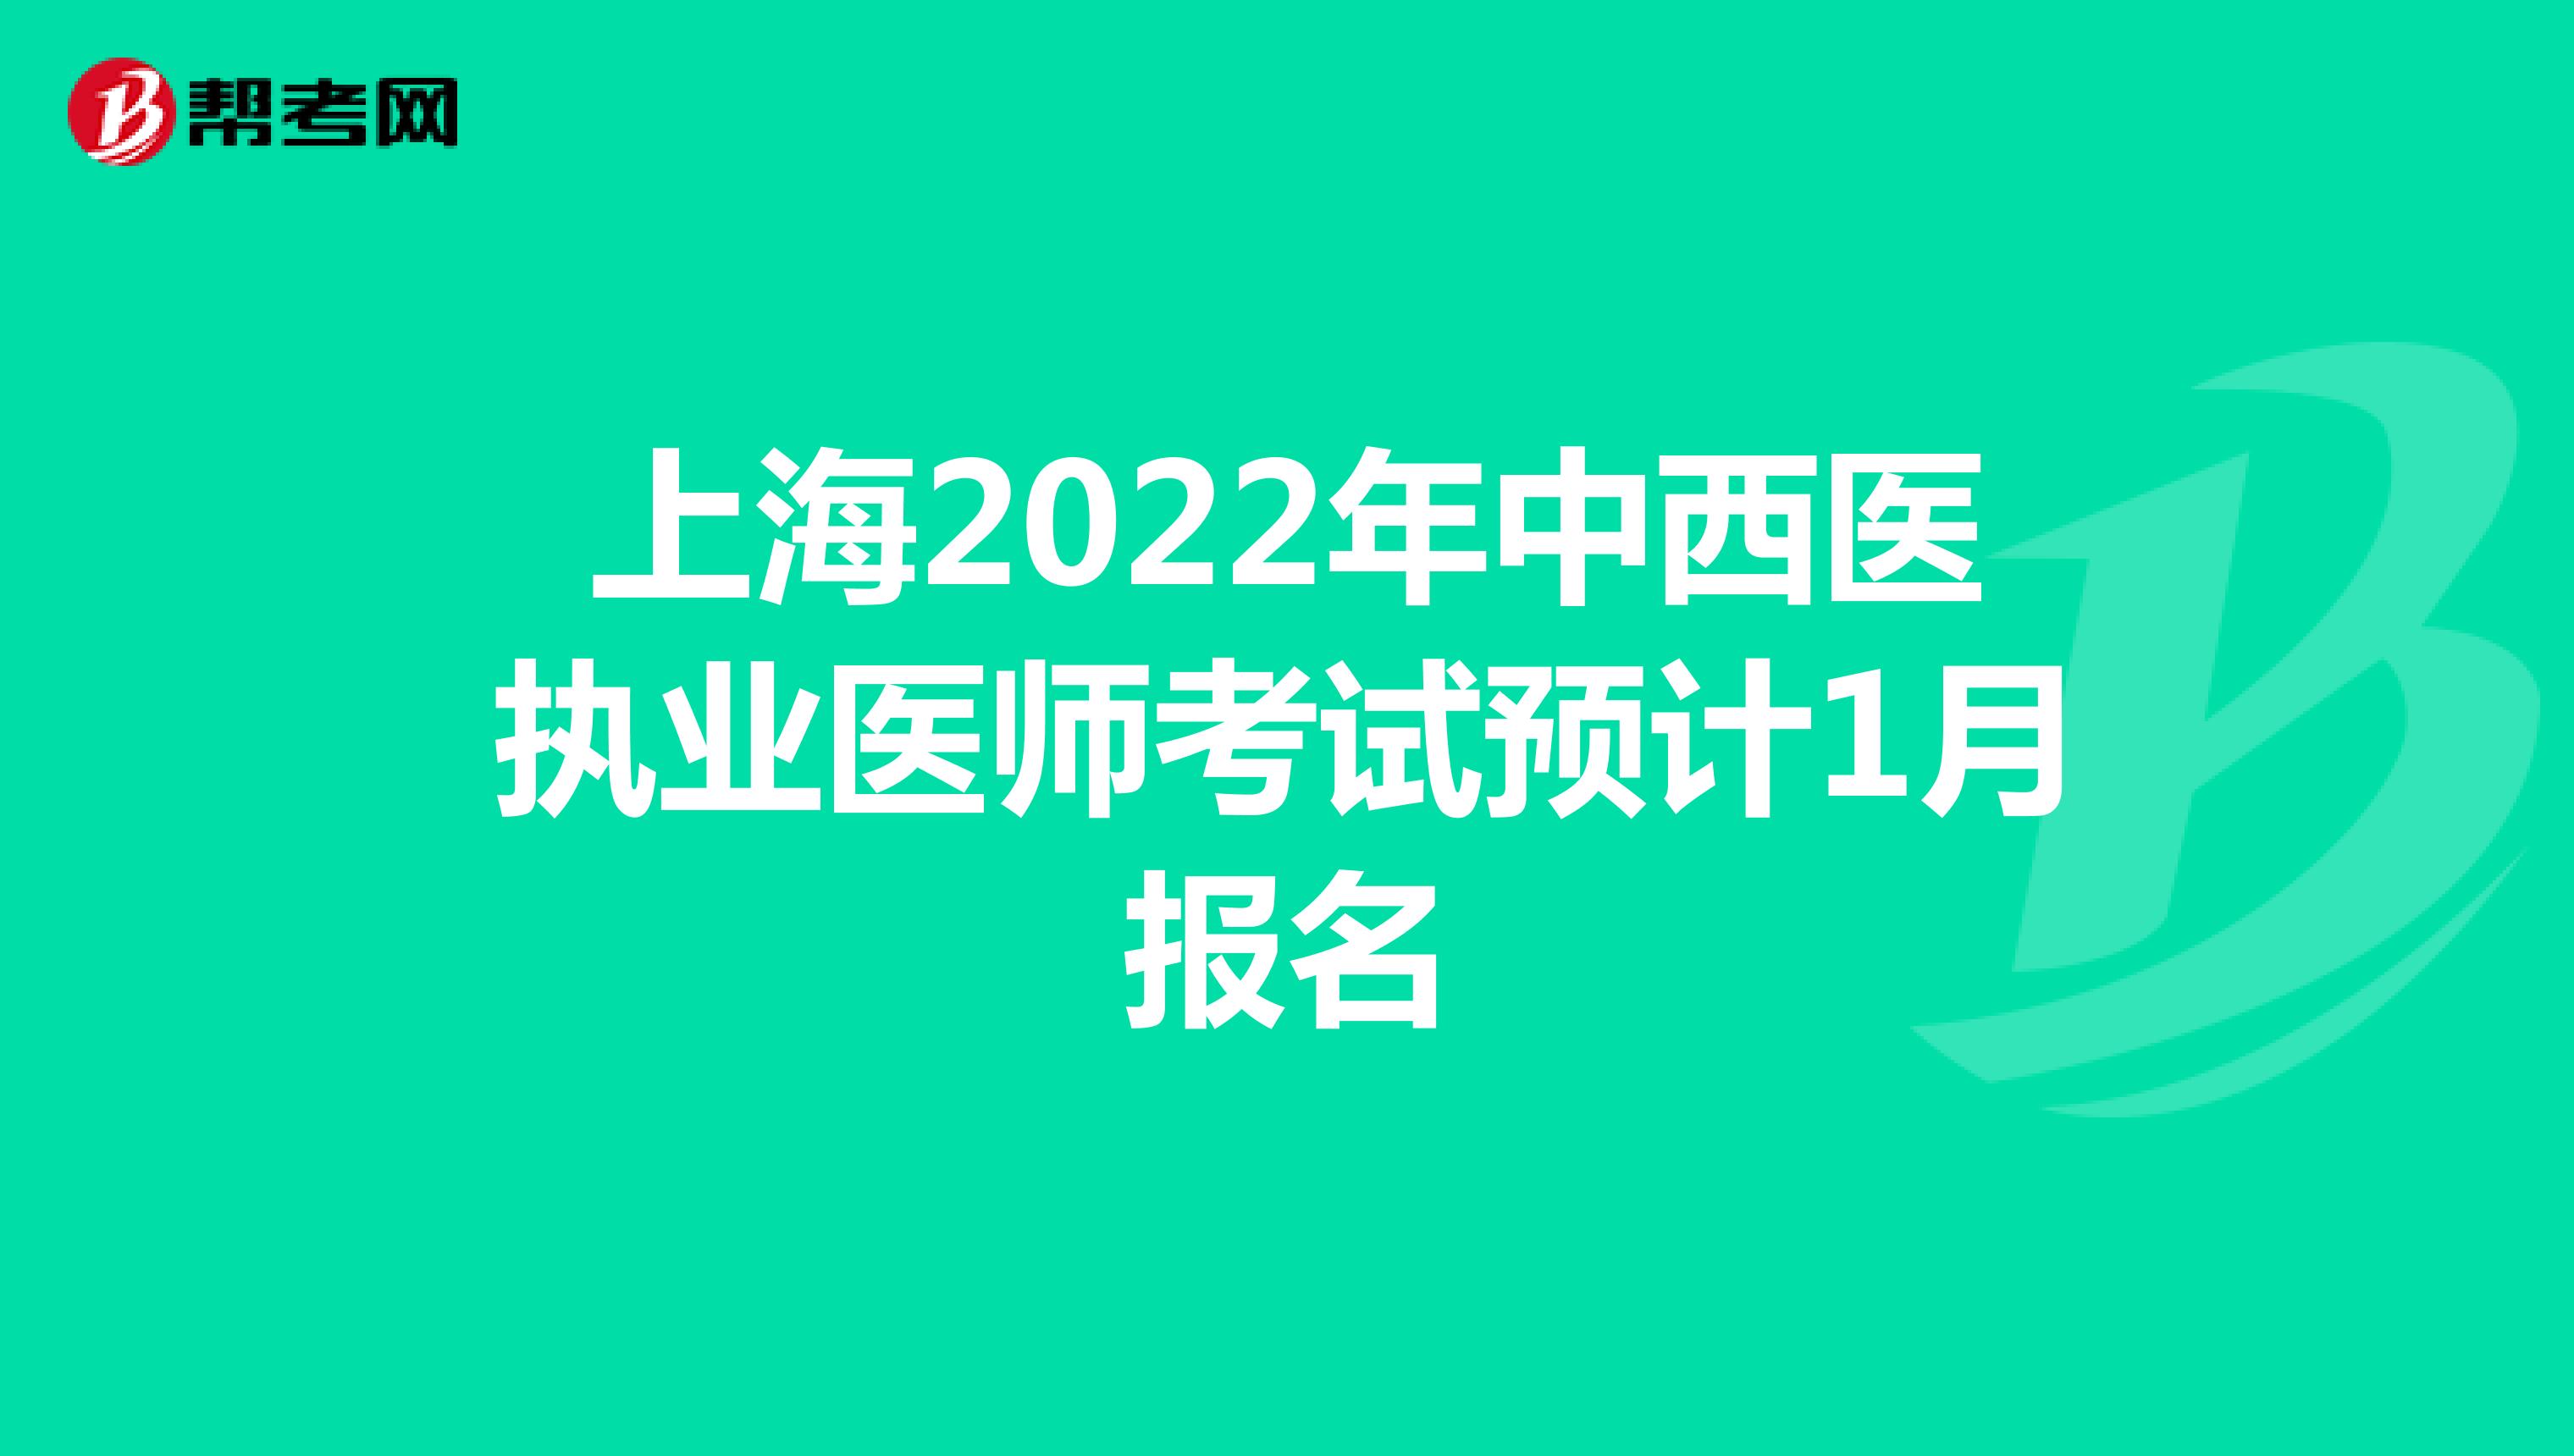 上海2022年中西医执业医师考试预计1月报名